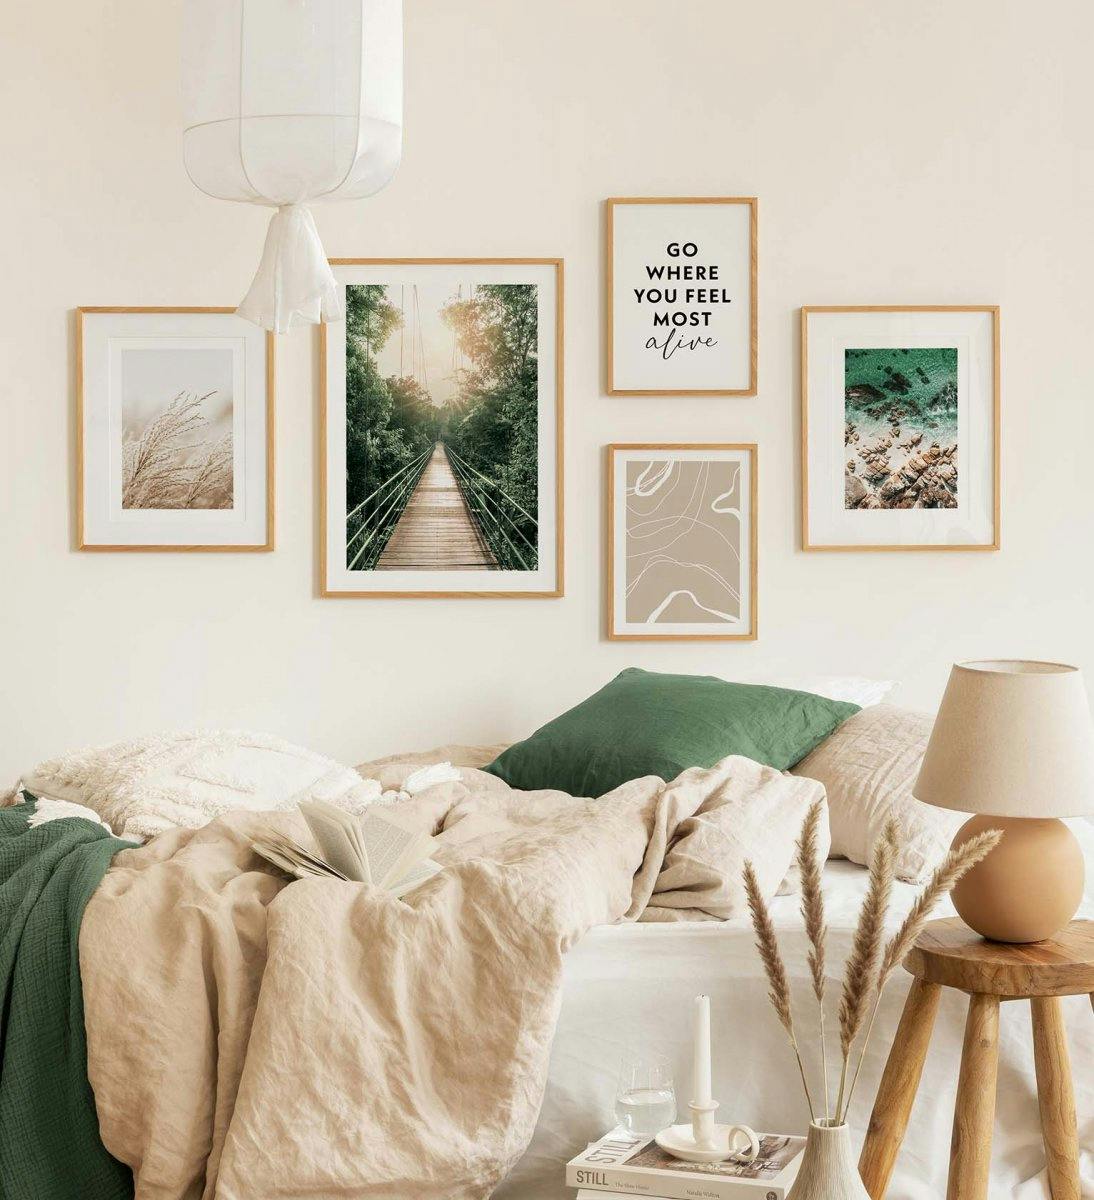 Groene fotowand van natuurfoto's gecombineerd met quotes en lijntekeningen voor slaapkamer